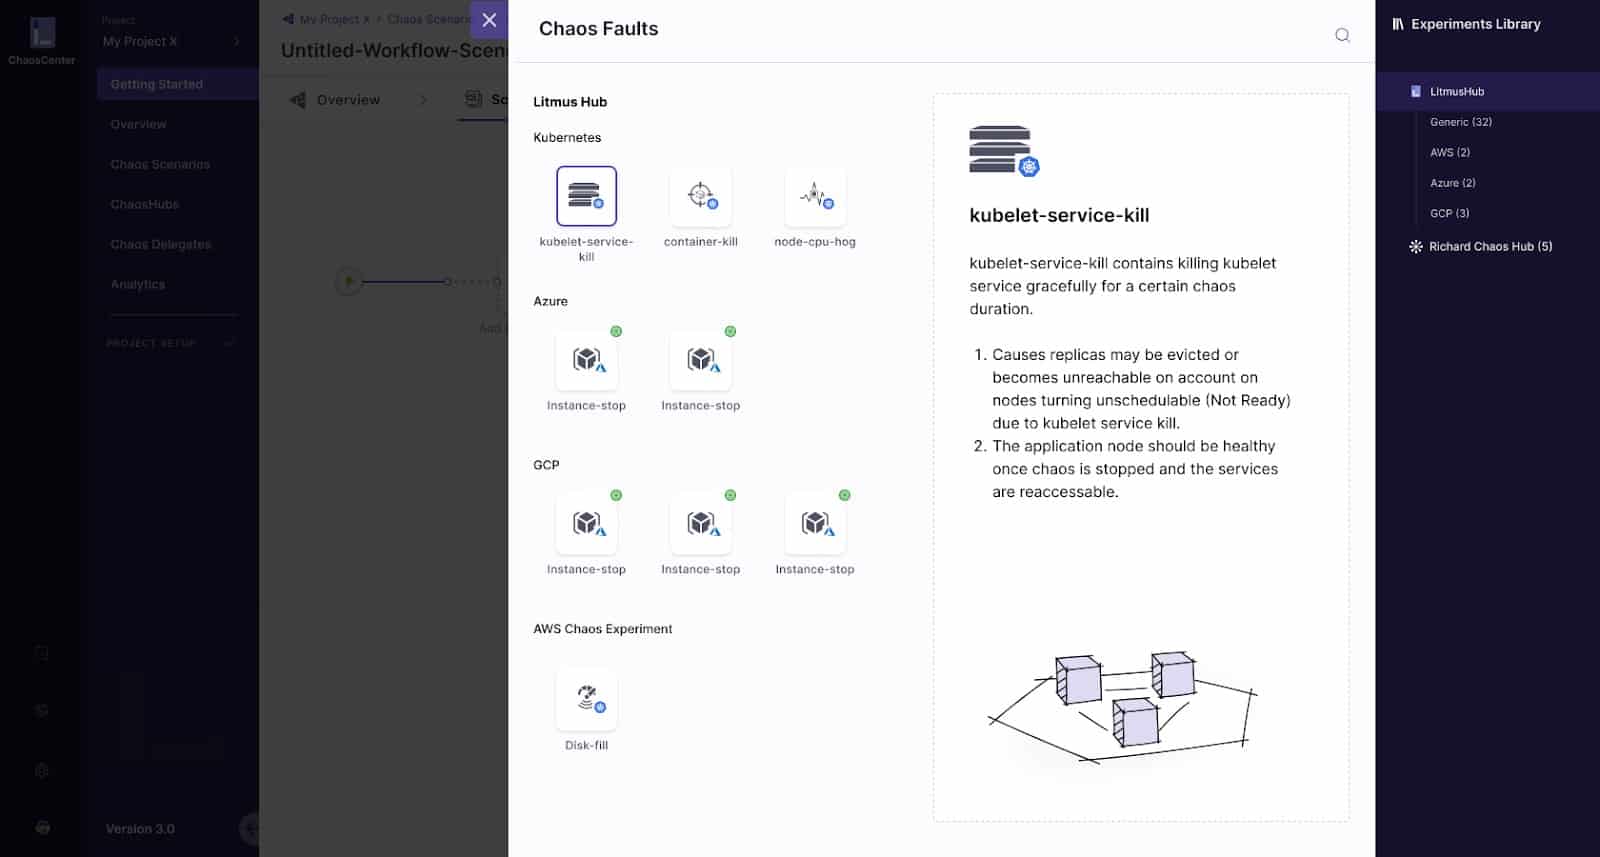 Screenshot showing Chaos Faults window on ChaosCenter